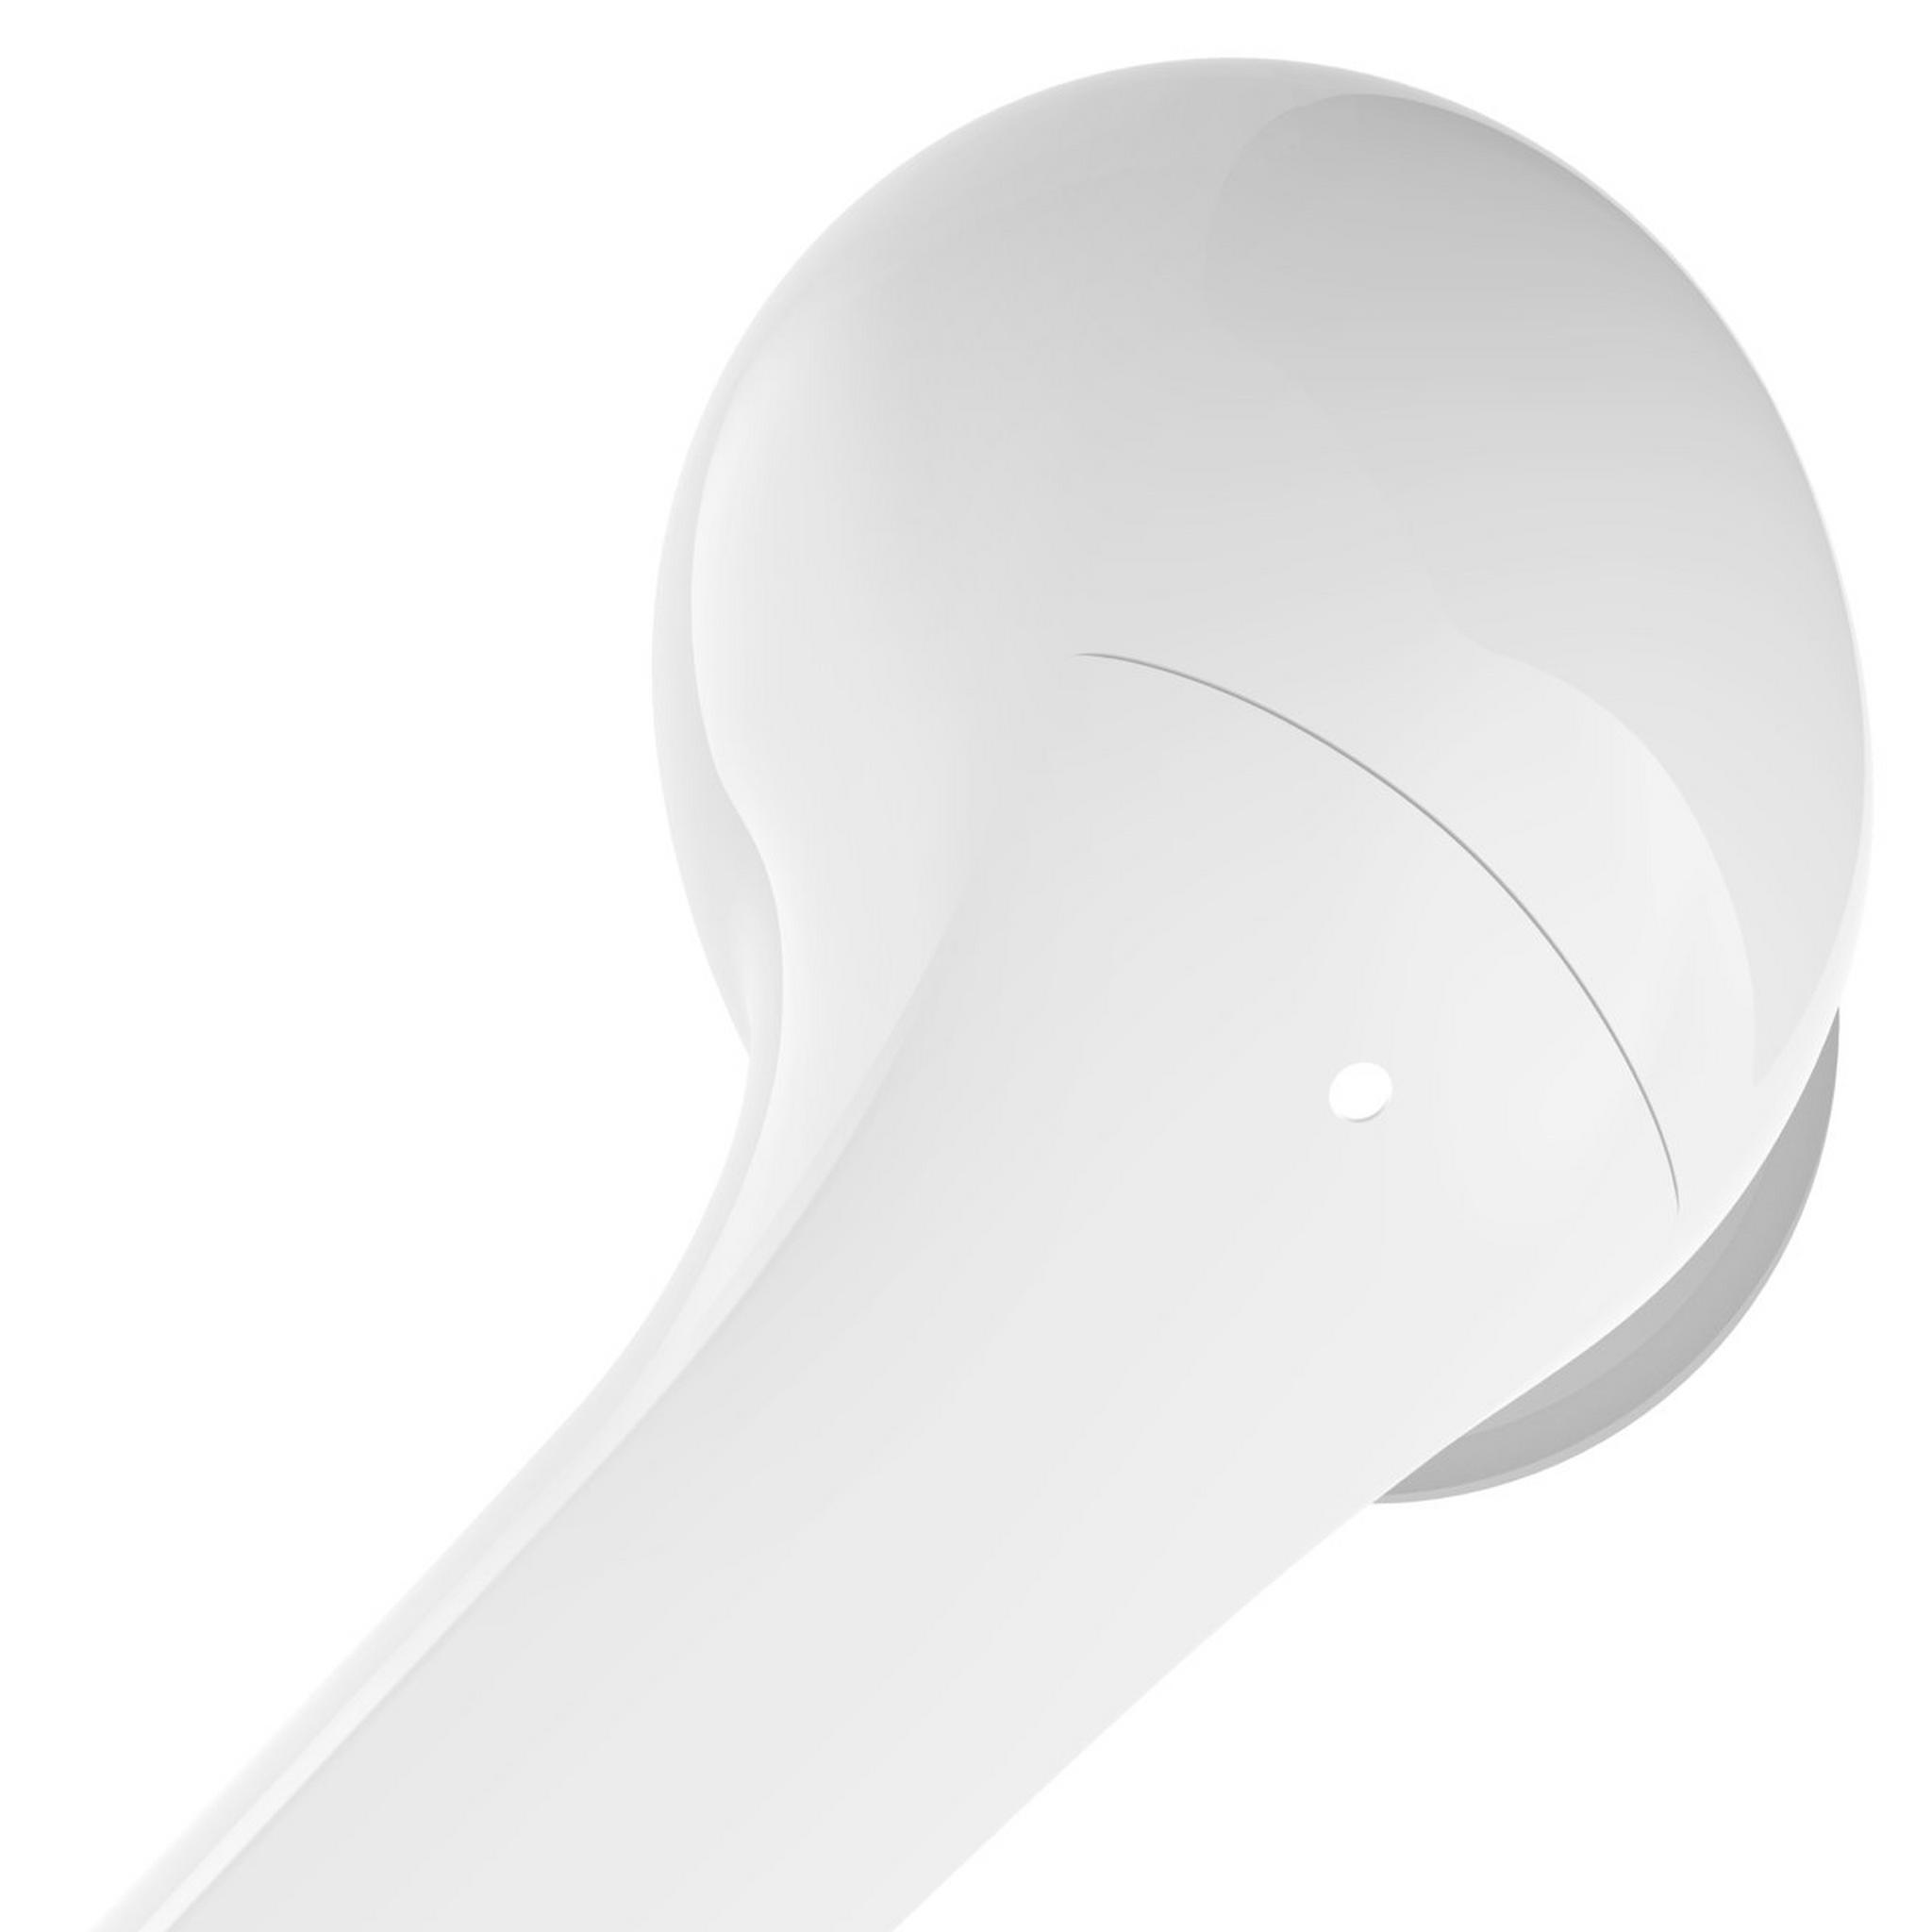 Belkin SoundForm Flow True Wireless Active Noise-Canceling Earbuds - White